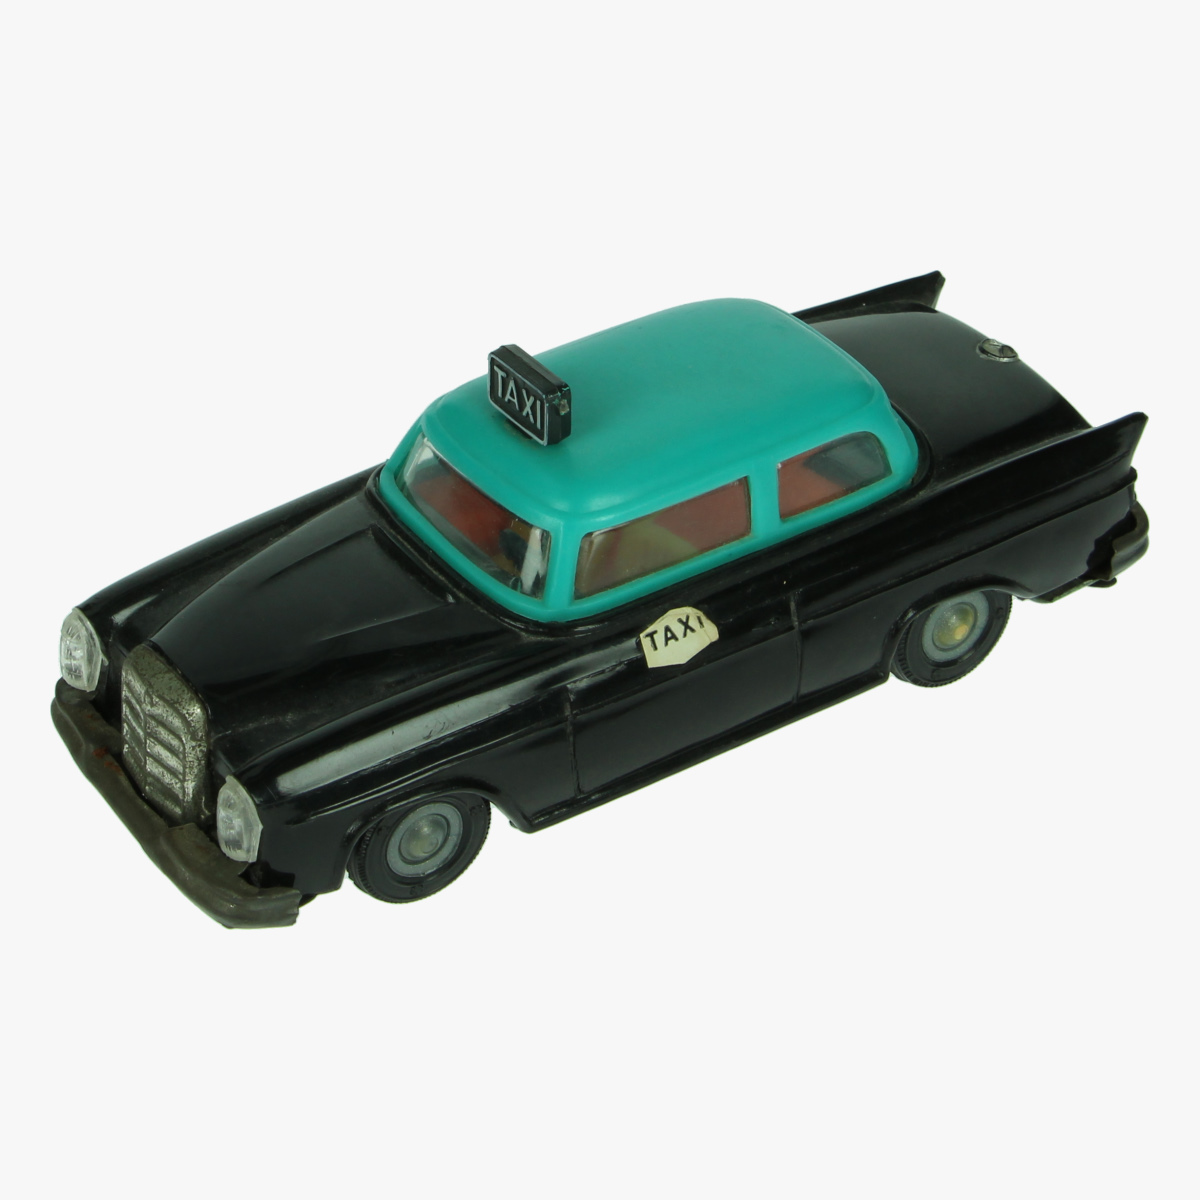 Afbeeldingen van Speelgoed auto Mercedes taxi